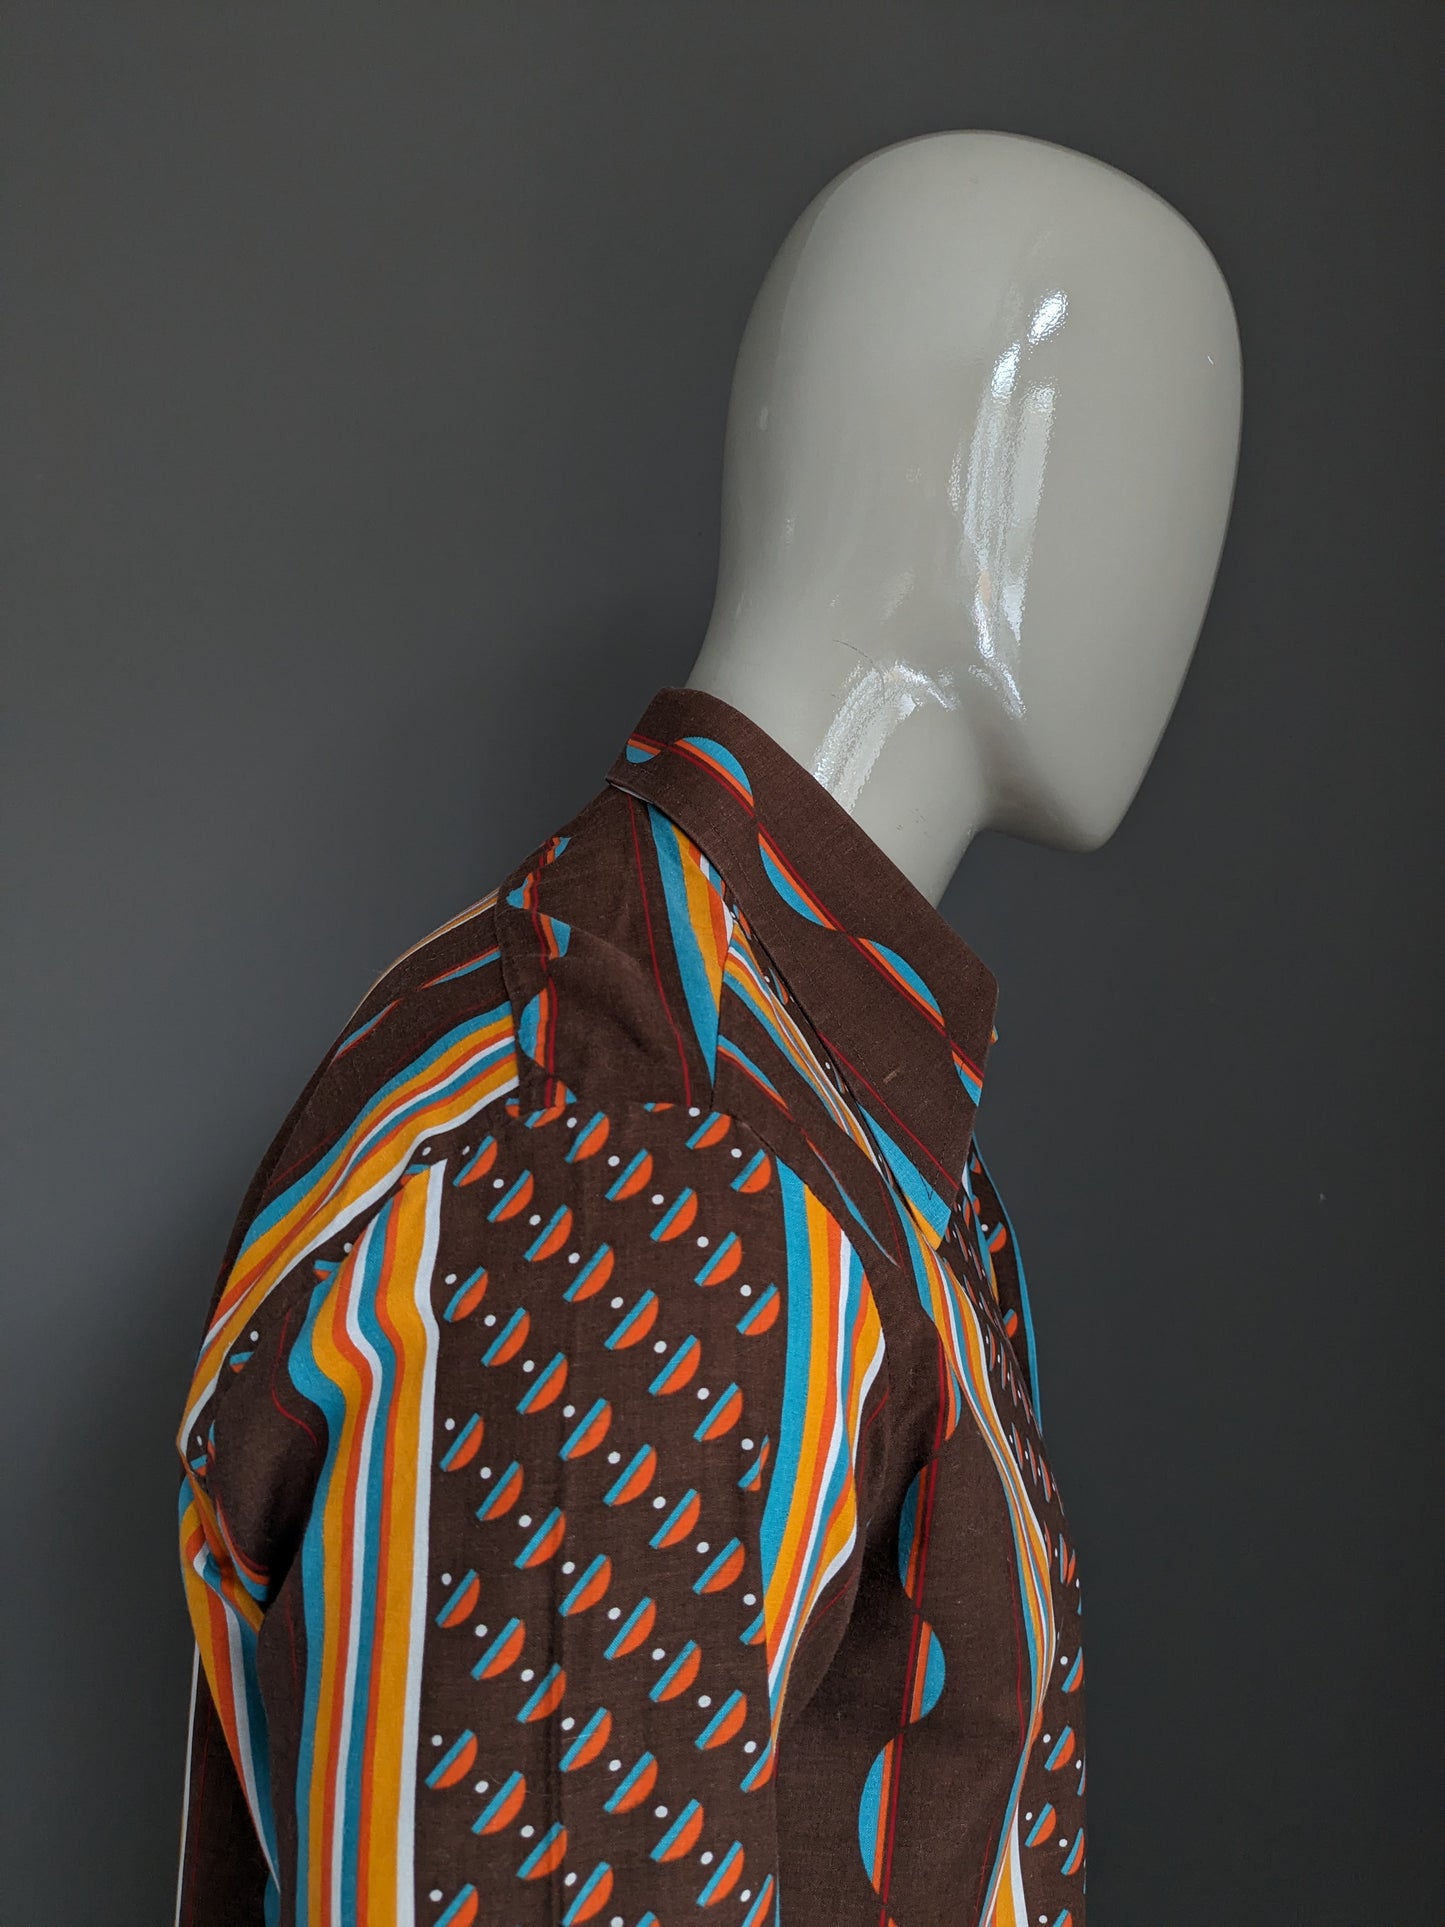 Vintage Trend 70's overhemd met puntkraag. Bruin Oranje Blauwe print. Maat L.